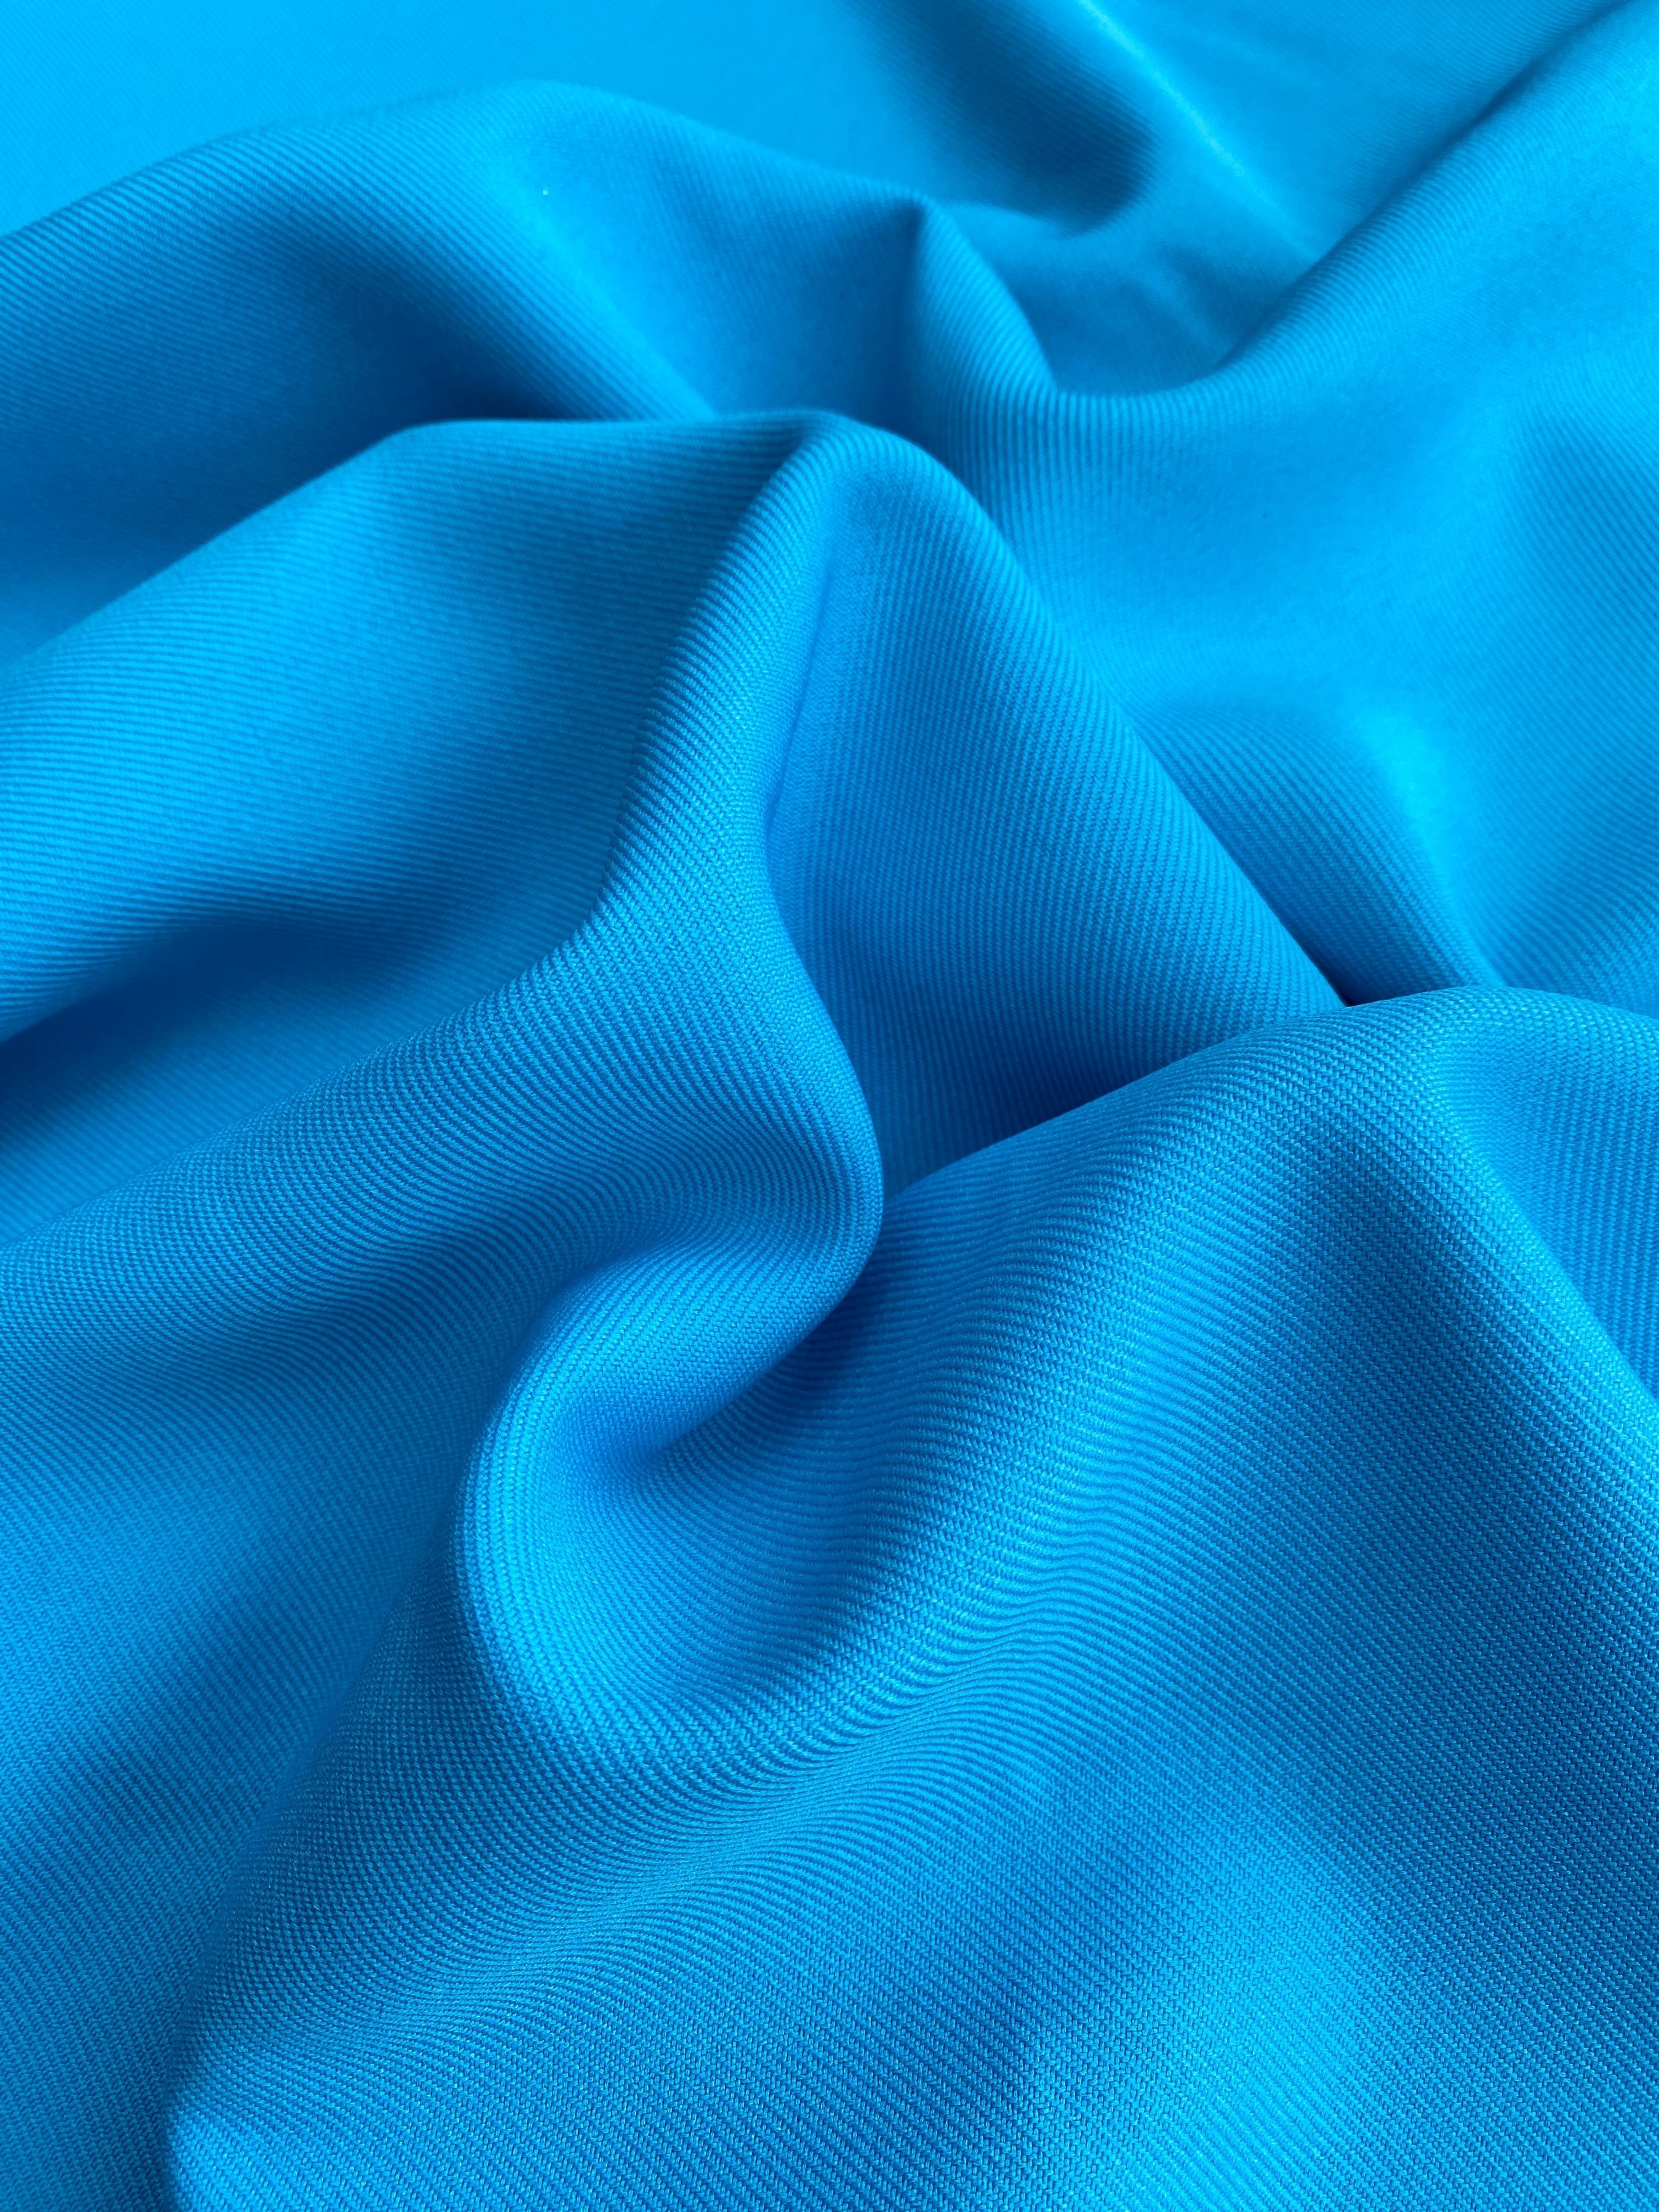 turquoise delaney gabardine, turquoise gabardine fabric, blue gabardine fabric, blue crepe and gabardine, royal bue gabardine fabric for pants, teal blue gabardine fabric for suit, blue gabardine and crepe, turquoise gabardine fabric for gown